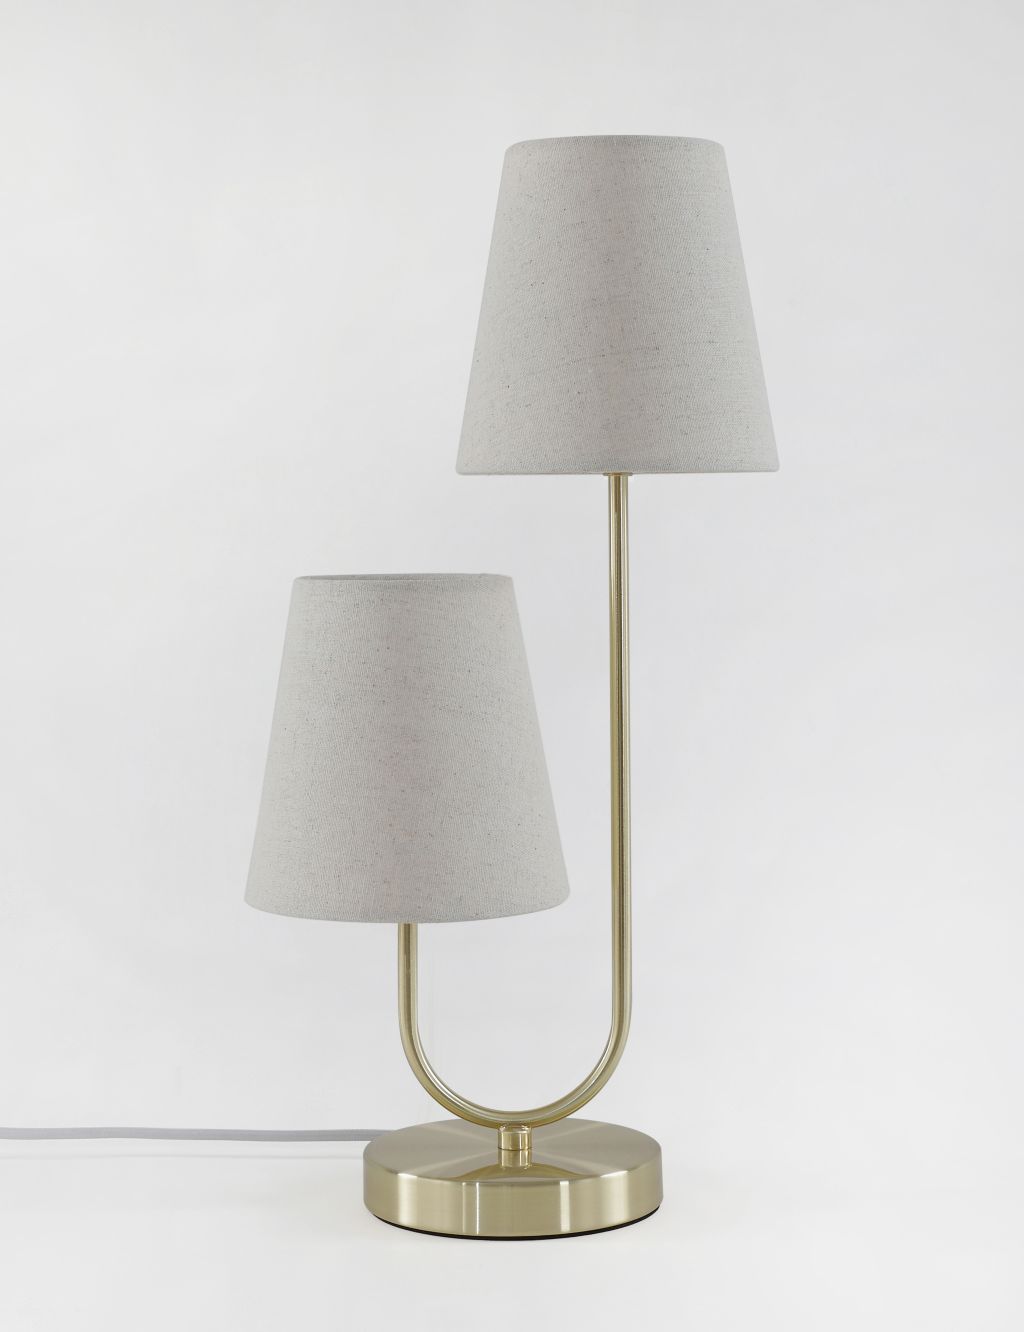 2 Shade Metal Table Lamp